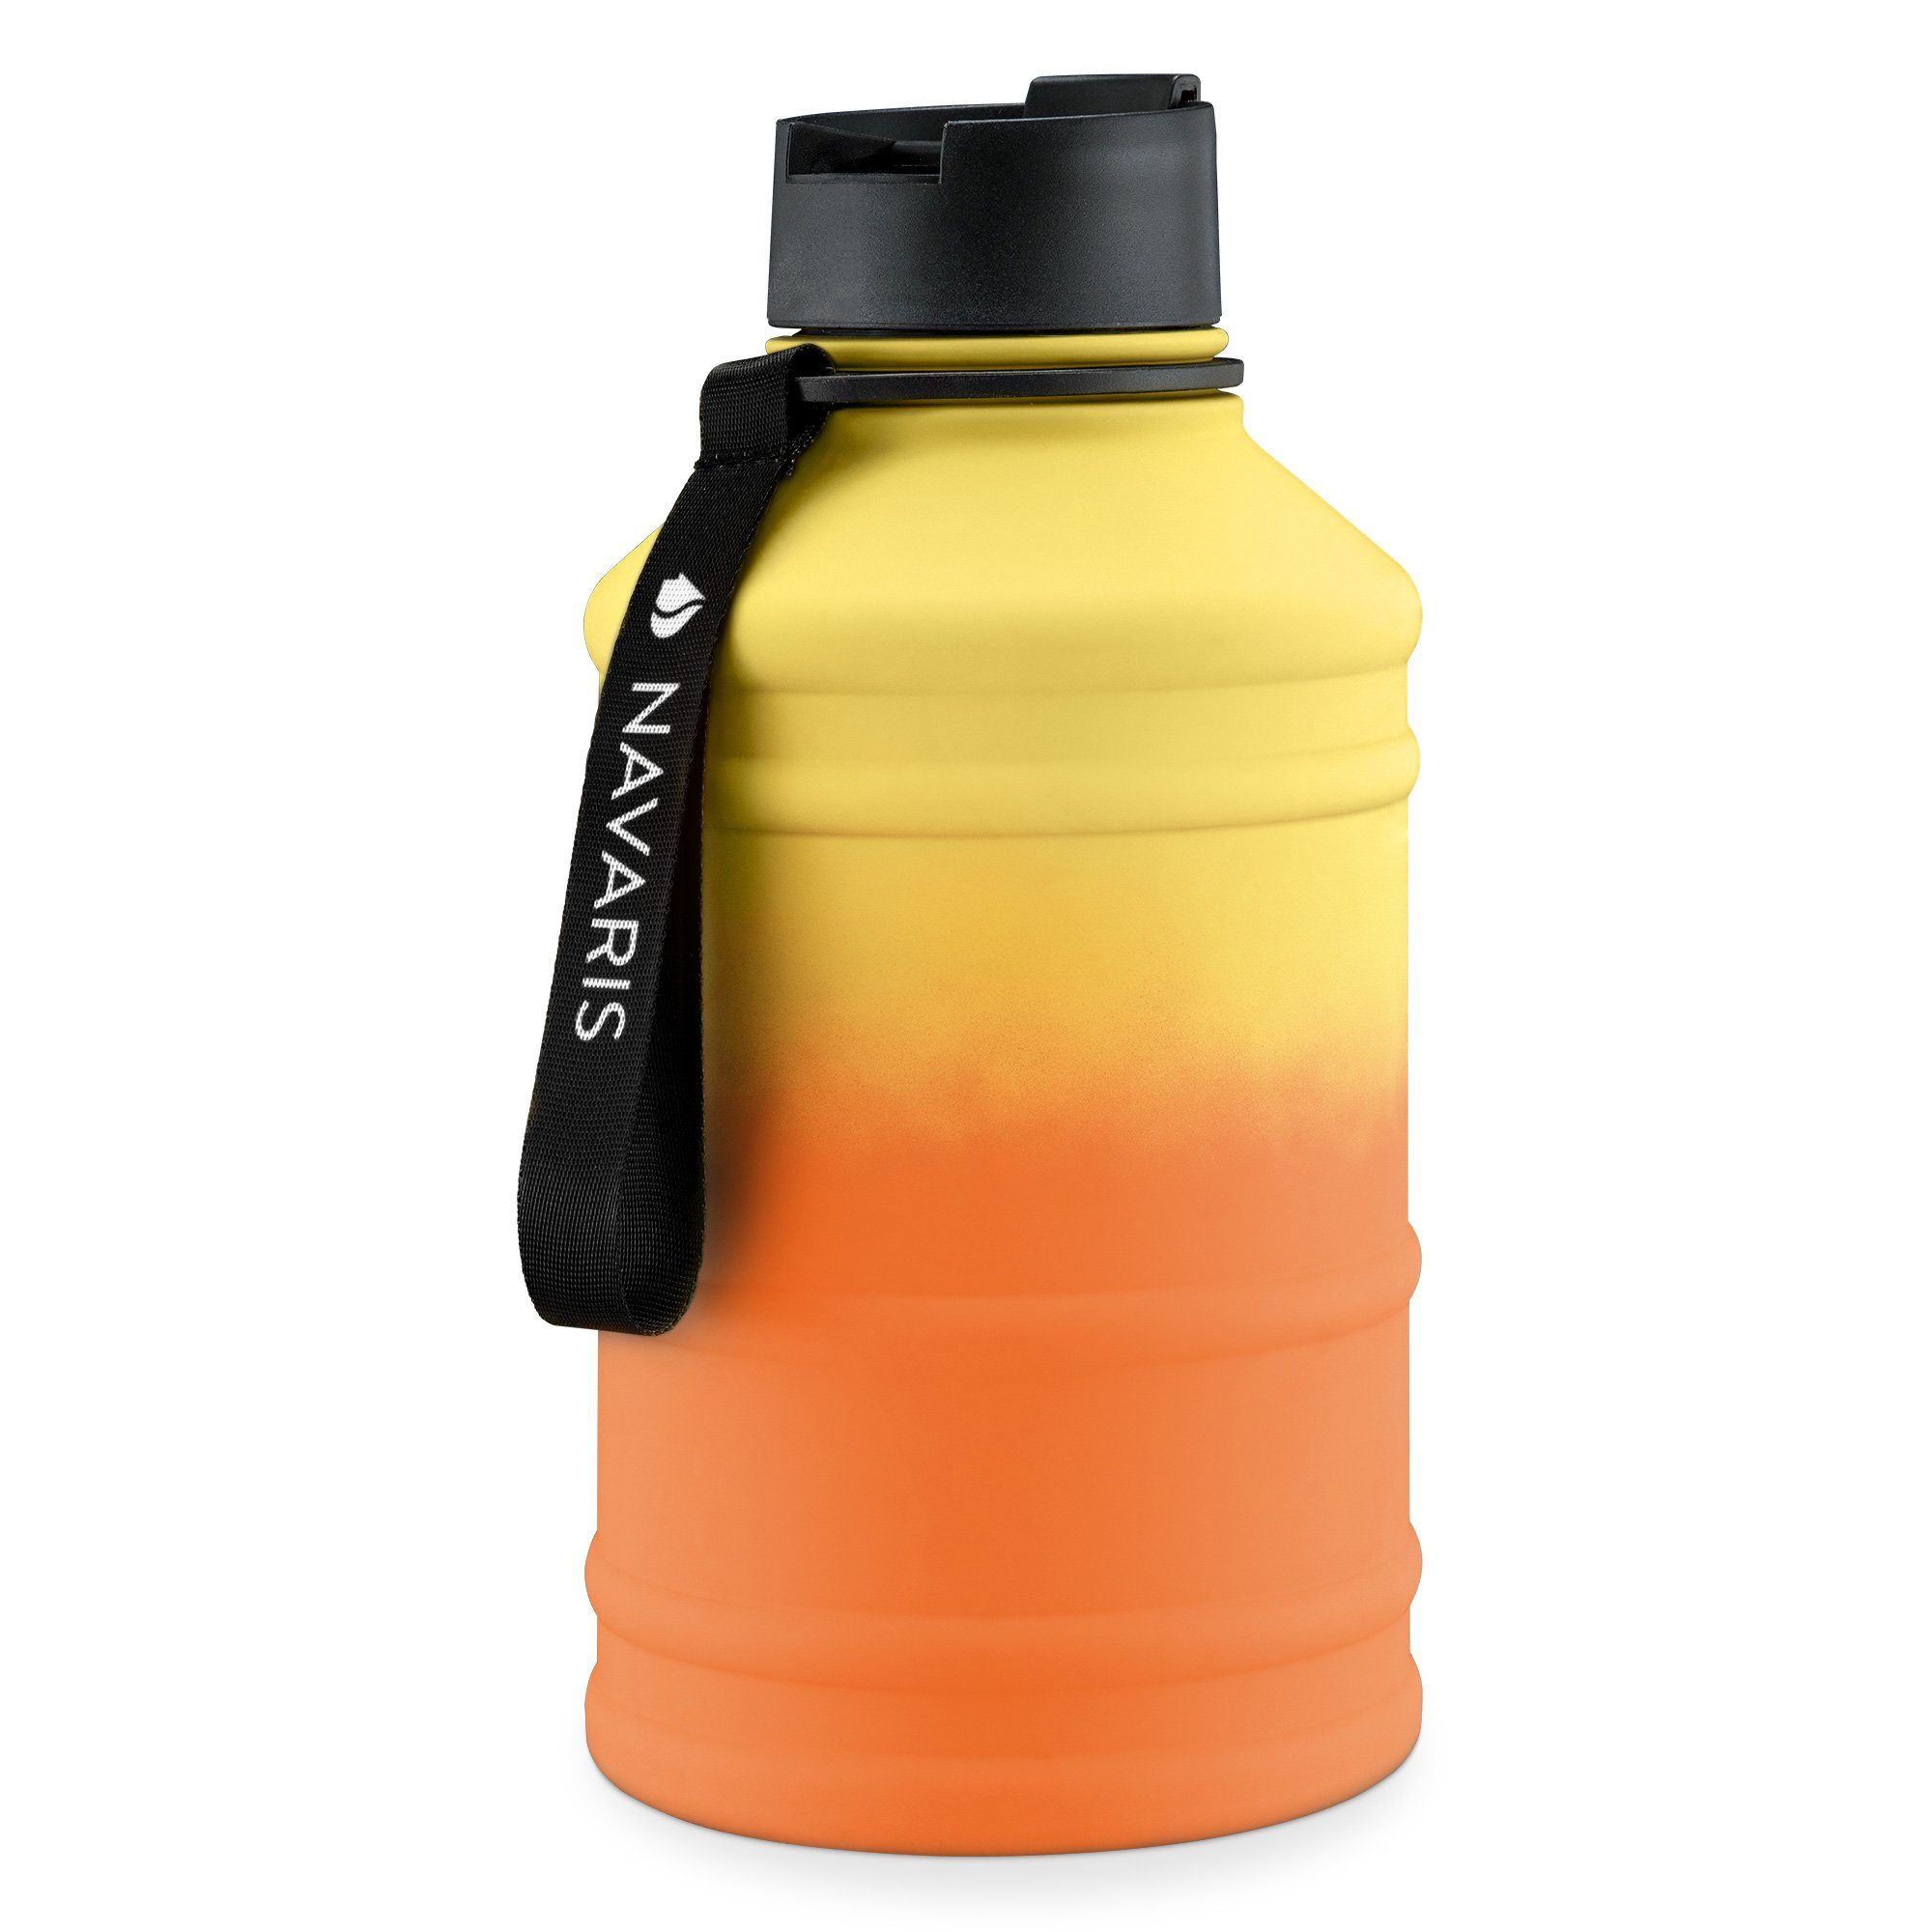 XXL Trinkflasche 2,2L im Hanteldesign – Flying-Gym